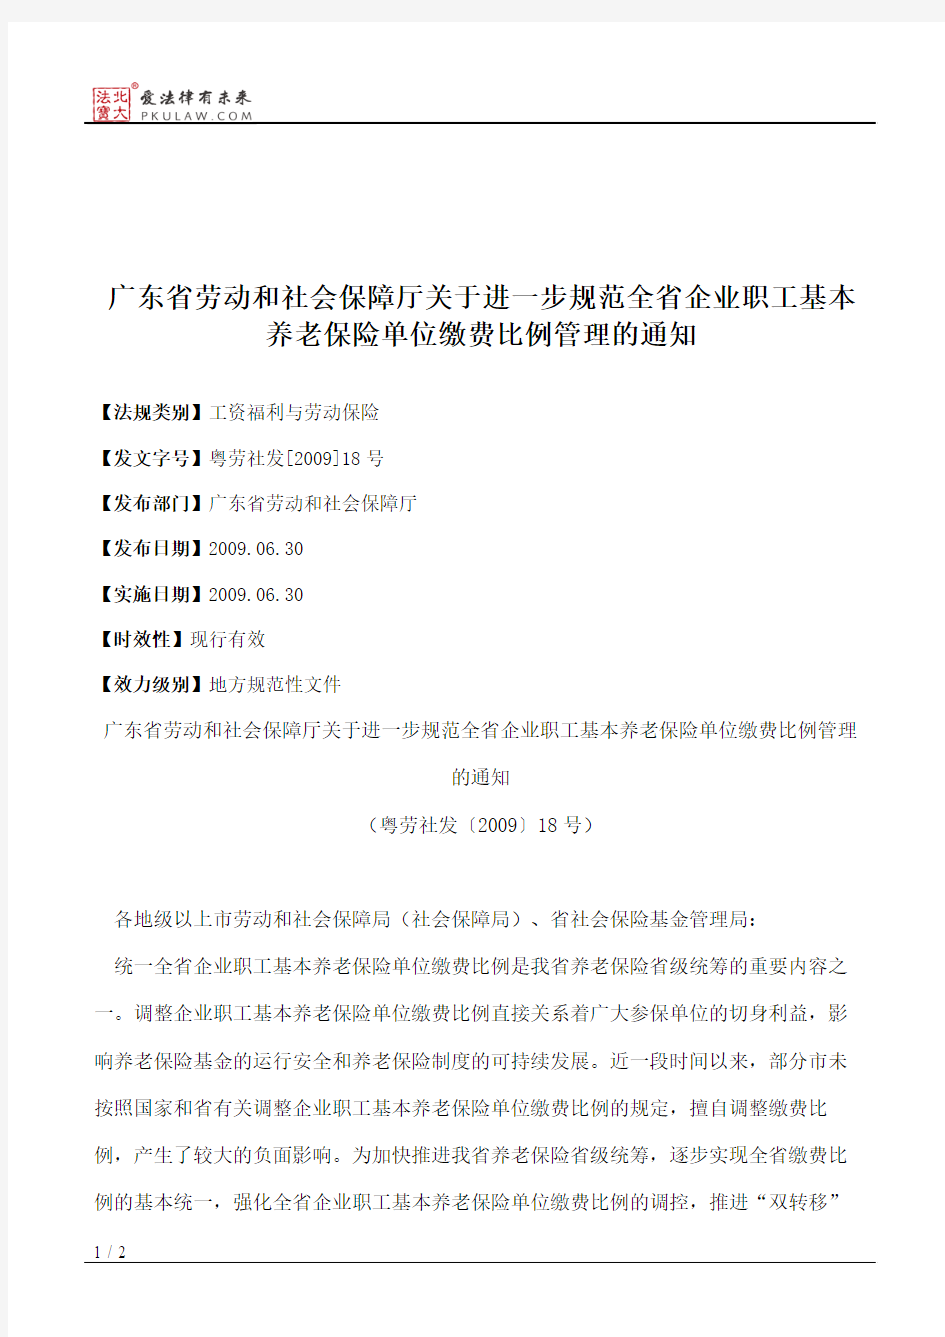 广东省劳动和社会保障厅关于进一步规范全省企业职工基本养老保险